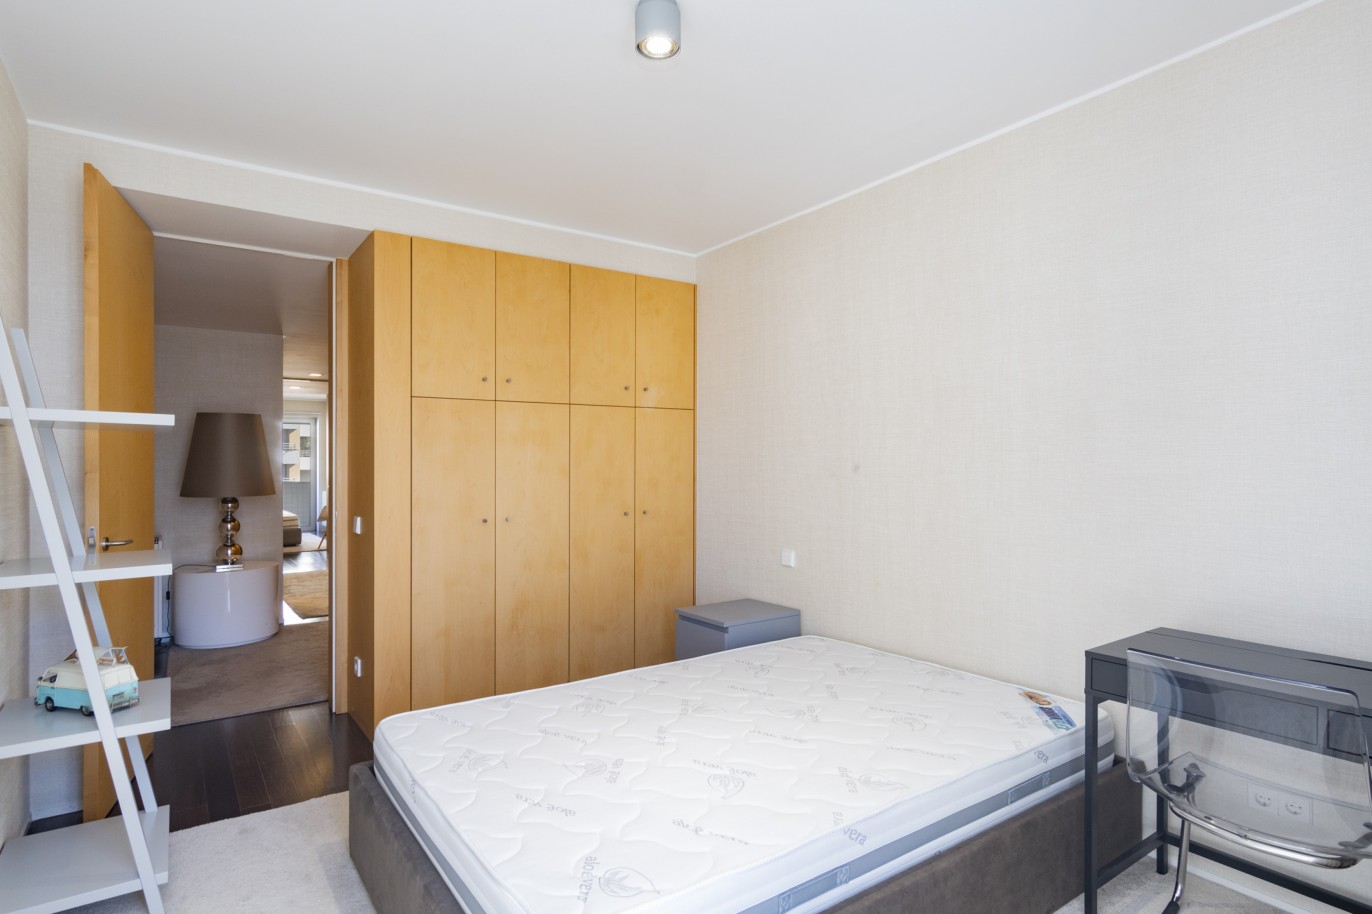 3 Bedroom Duplex Apartment with balcony, for sale, in Boavista, Porto, Portugal_217713